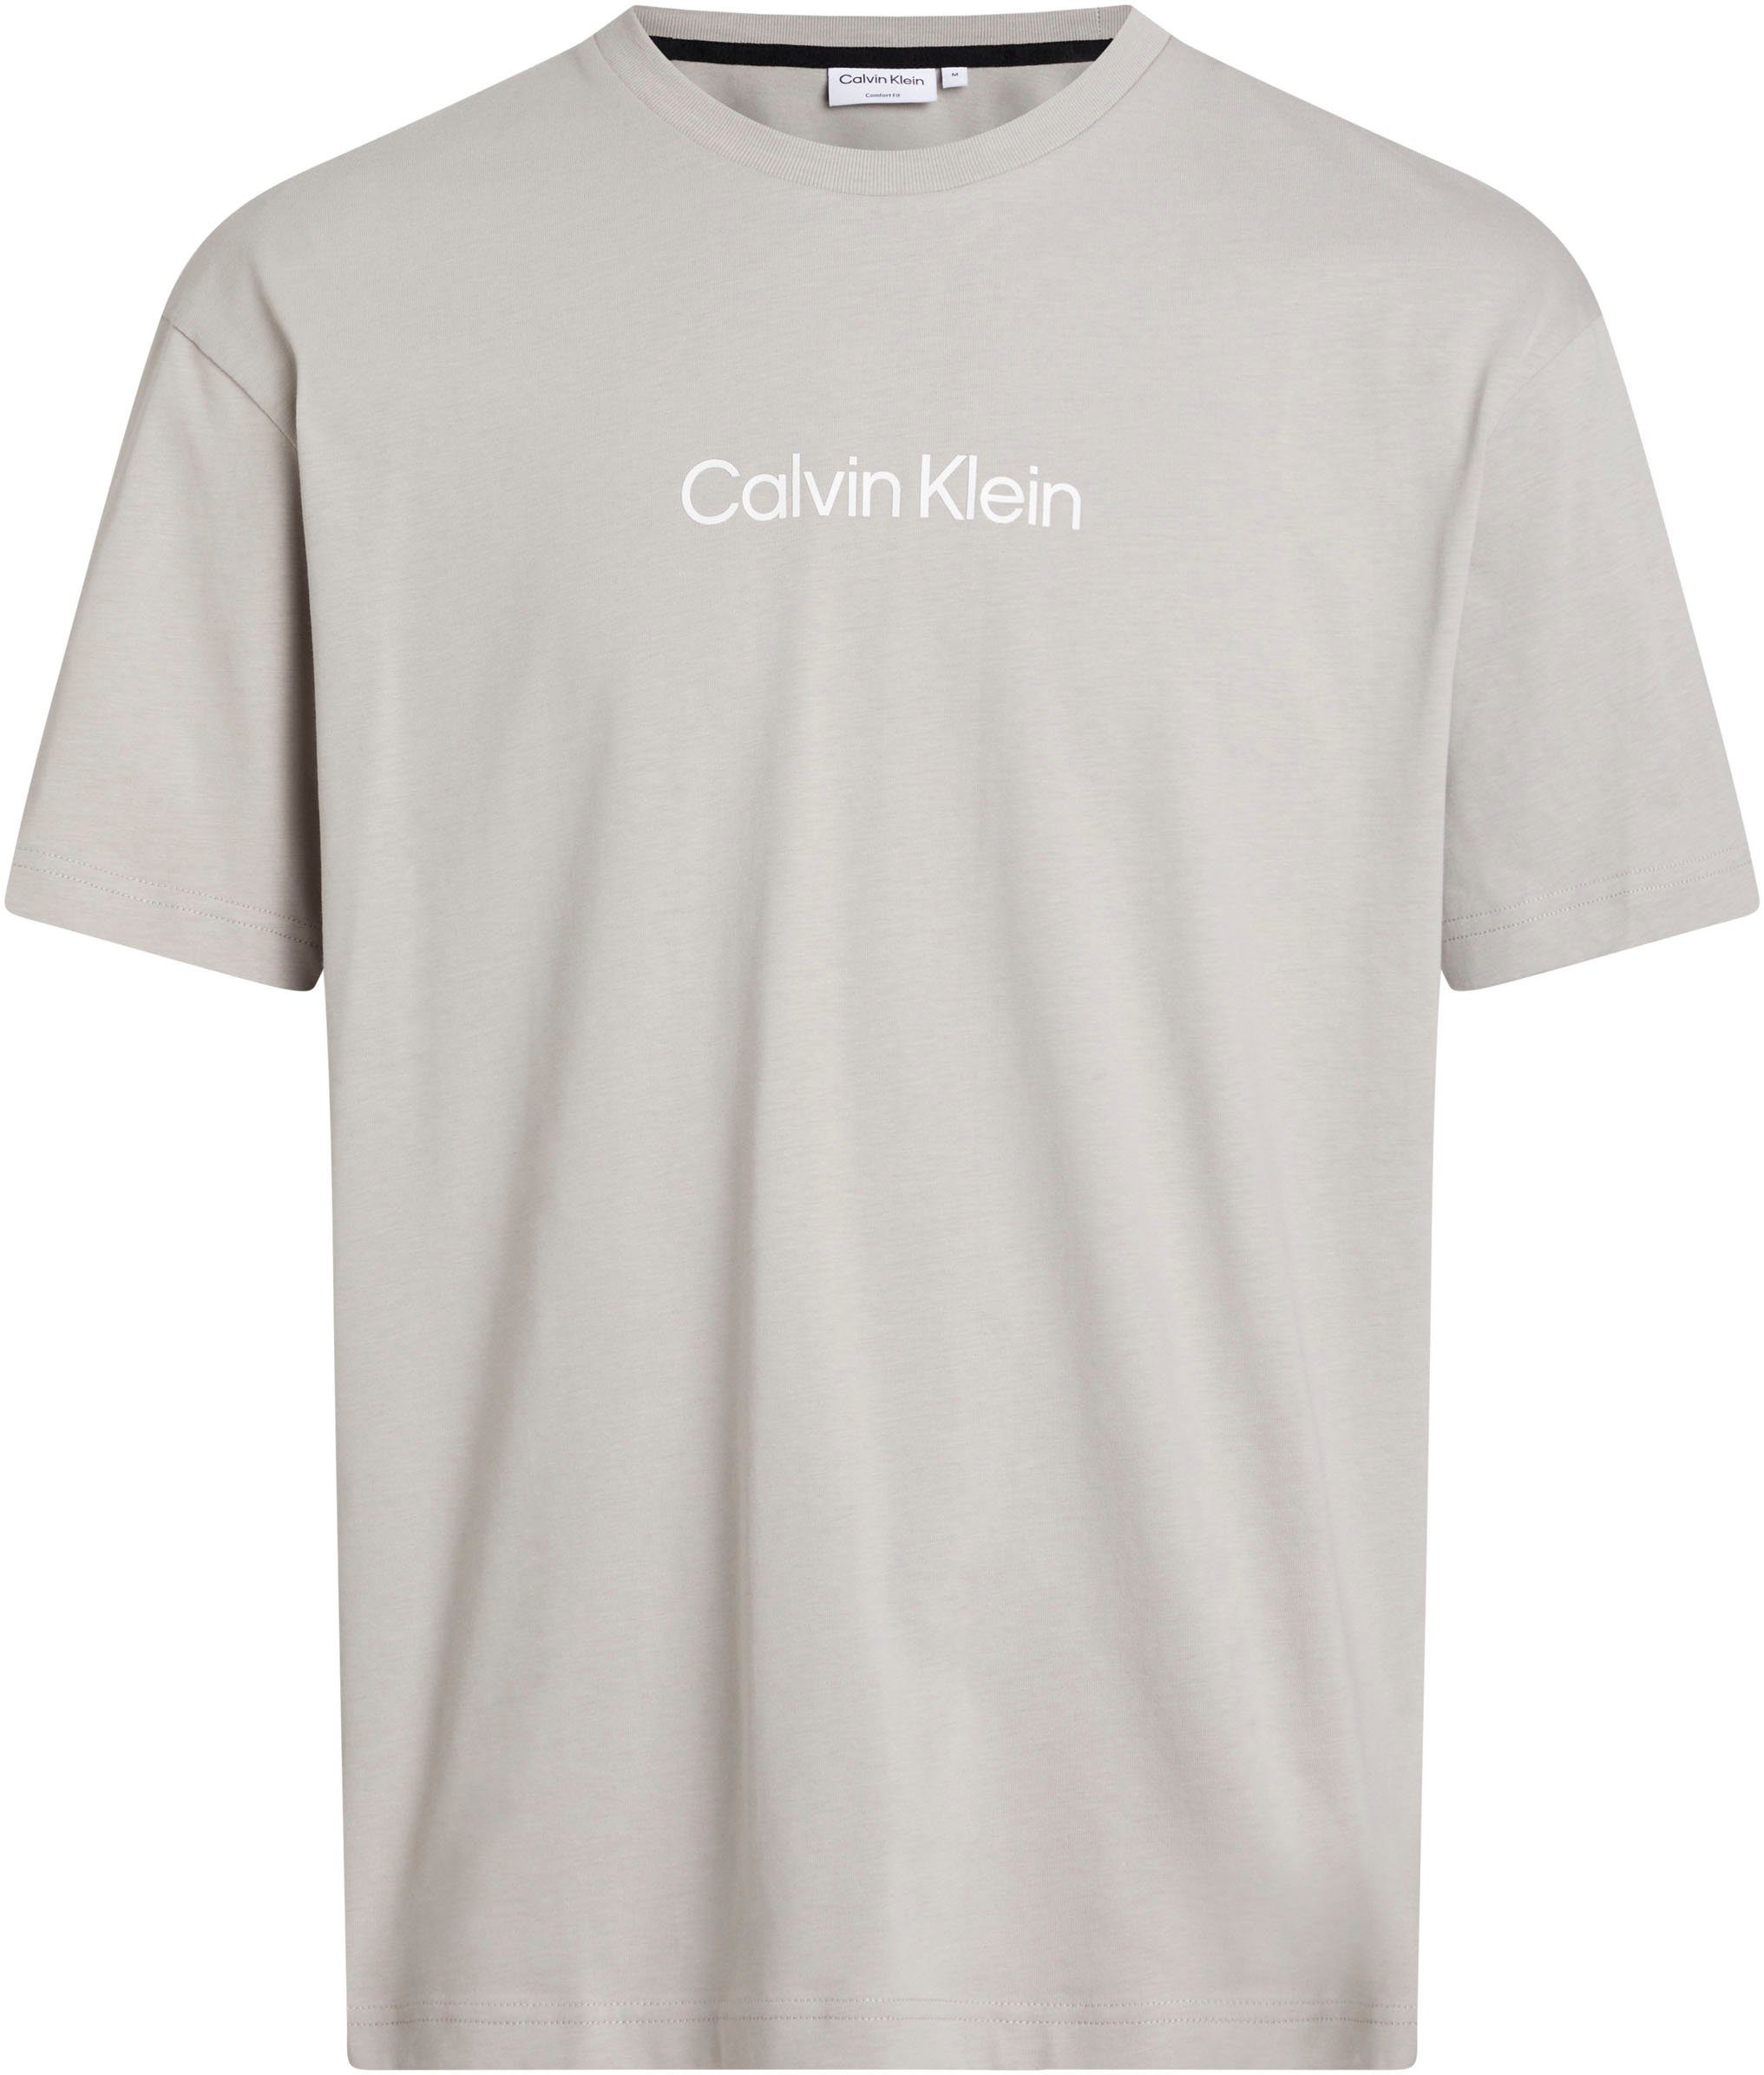 Calvin Klein T-SHIRT T-Shirt COMFORT Gray HERO aufgedrucktem Markenlabel Ghost LOGO mit